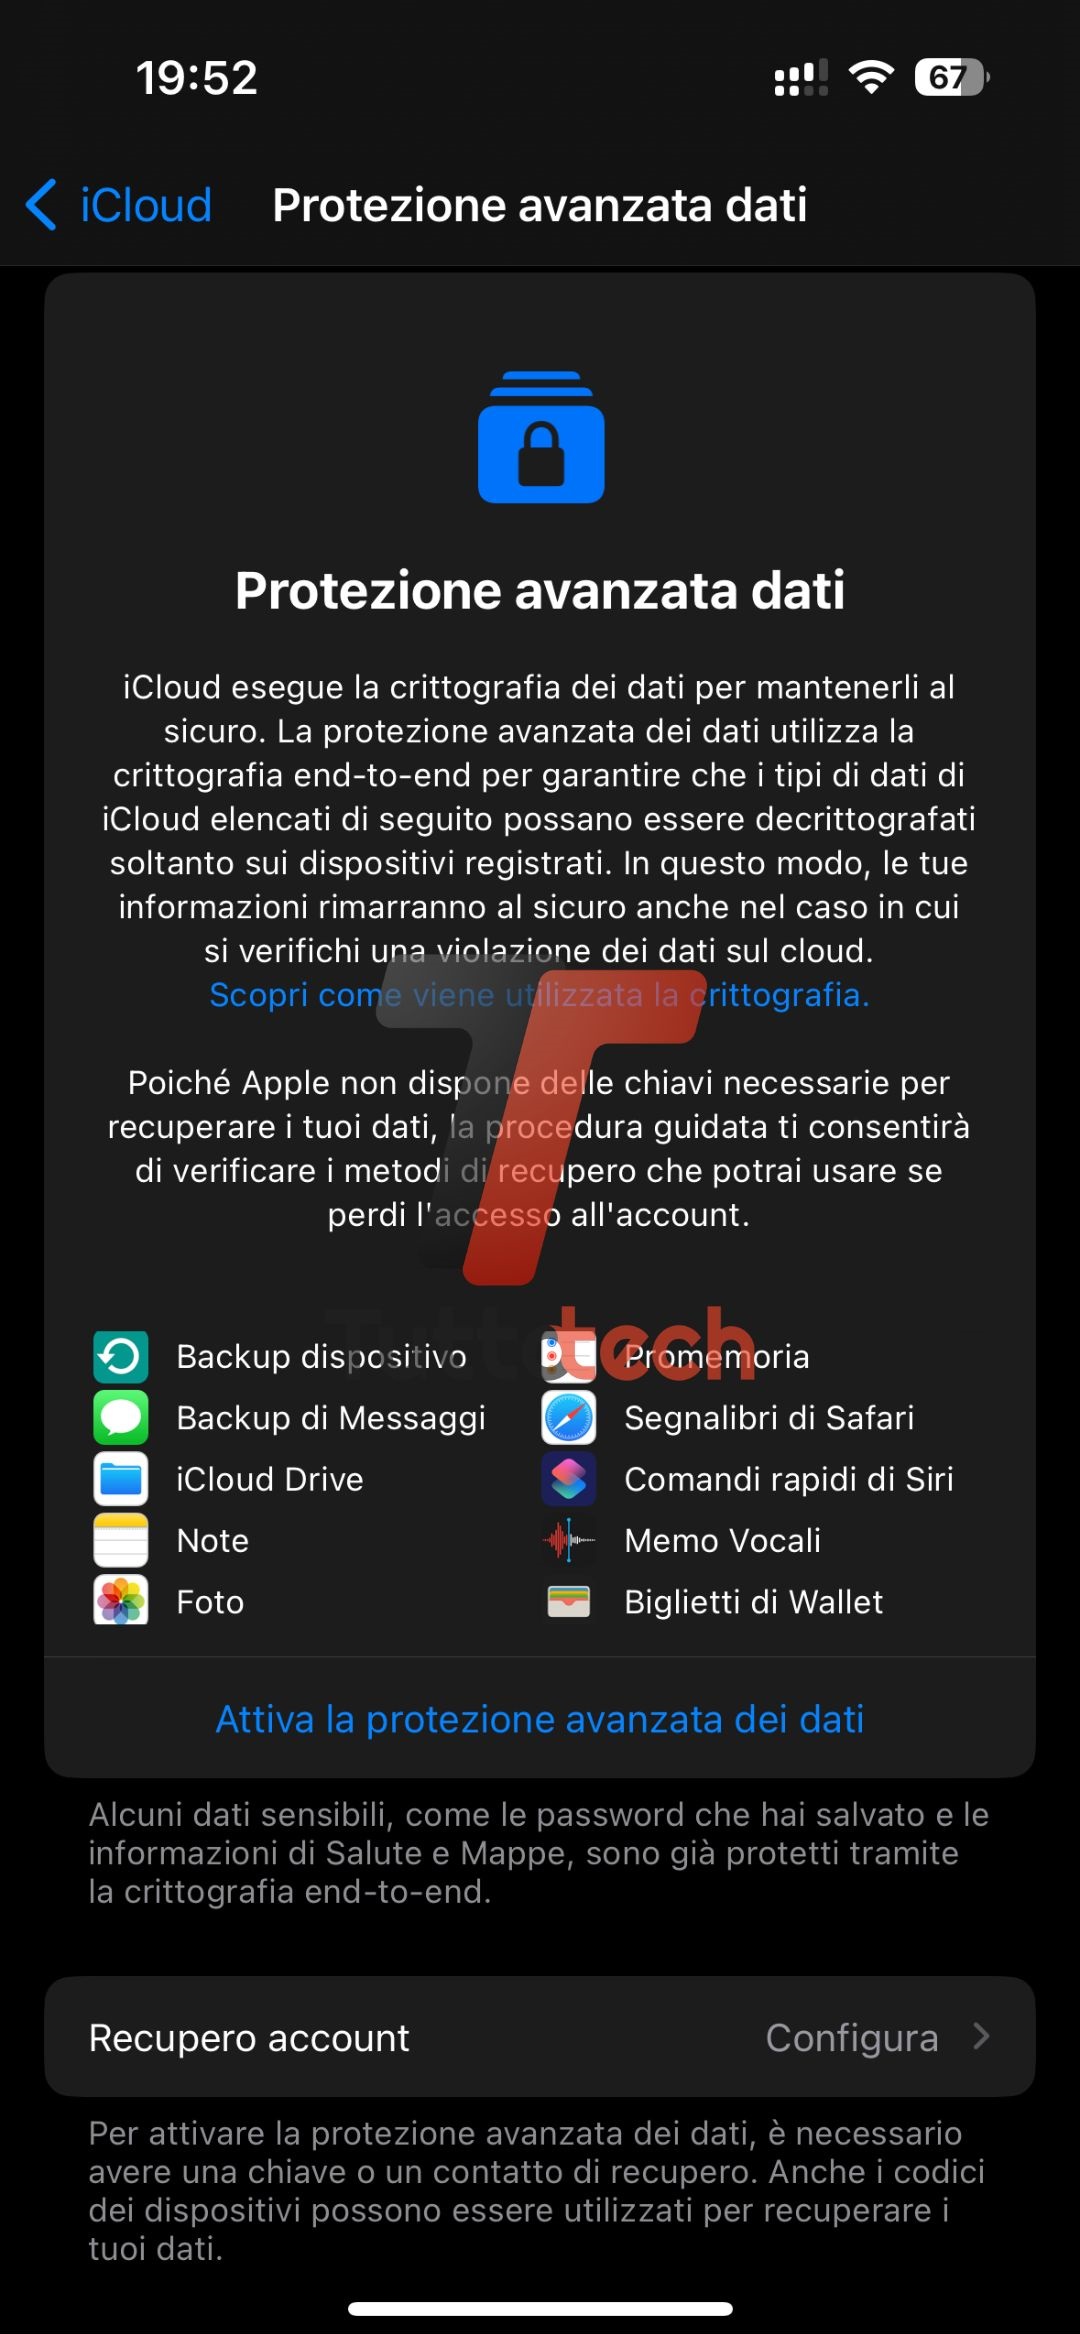 Con iOS 16.3, Apple ha portato la Protezione avanzata dei dati di iCloud su scala globale